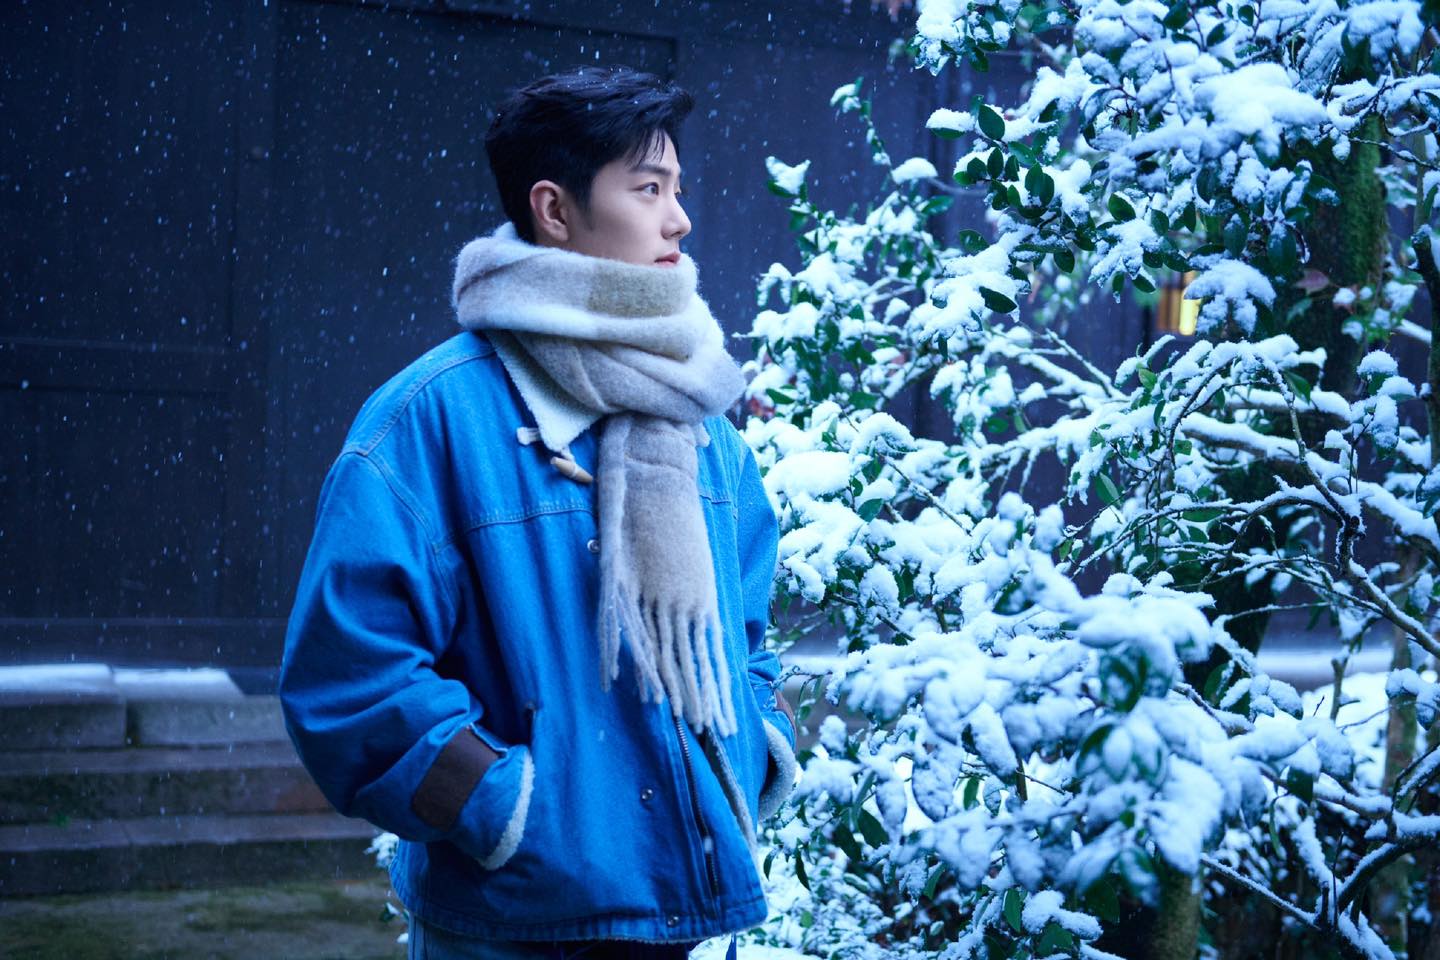 Tiêu Chiến hóa 'bạn trai mùa đông' trong loạt ảnh dưới tuyết 'hút hồn' người hâm mộ - Ảnh 4